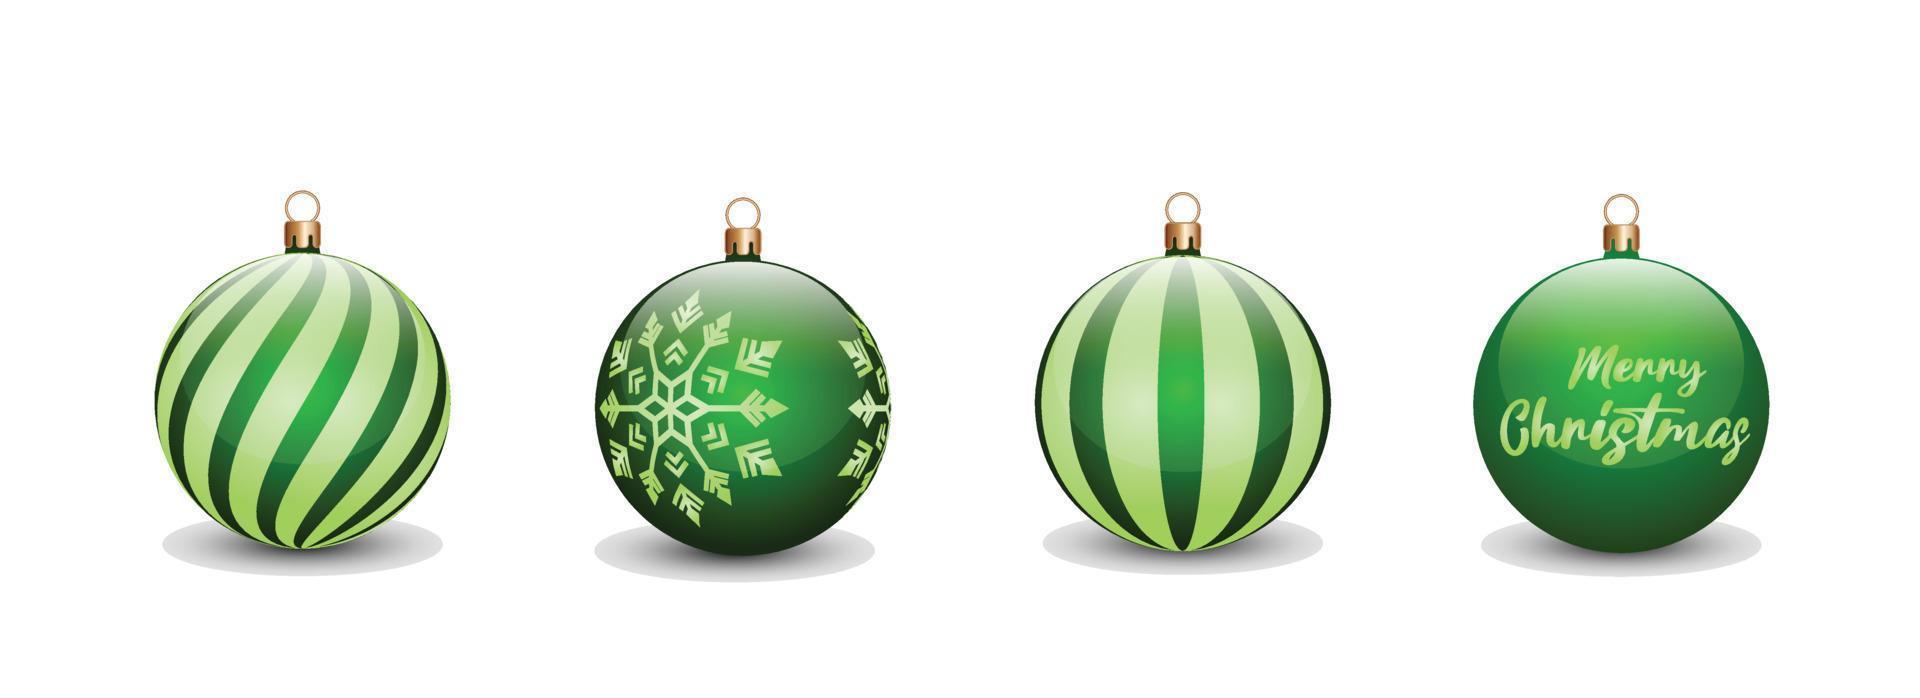 conjunto de concepto de bolas de navidad en color verde para la celebración del día de navidad. se puede utilizar para diseñar activos, invitaciones, afiches, pancartas, vallas publicitarias con un concepto navideño vector